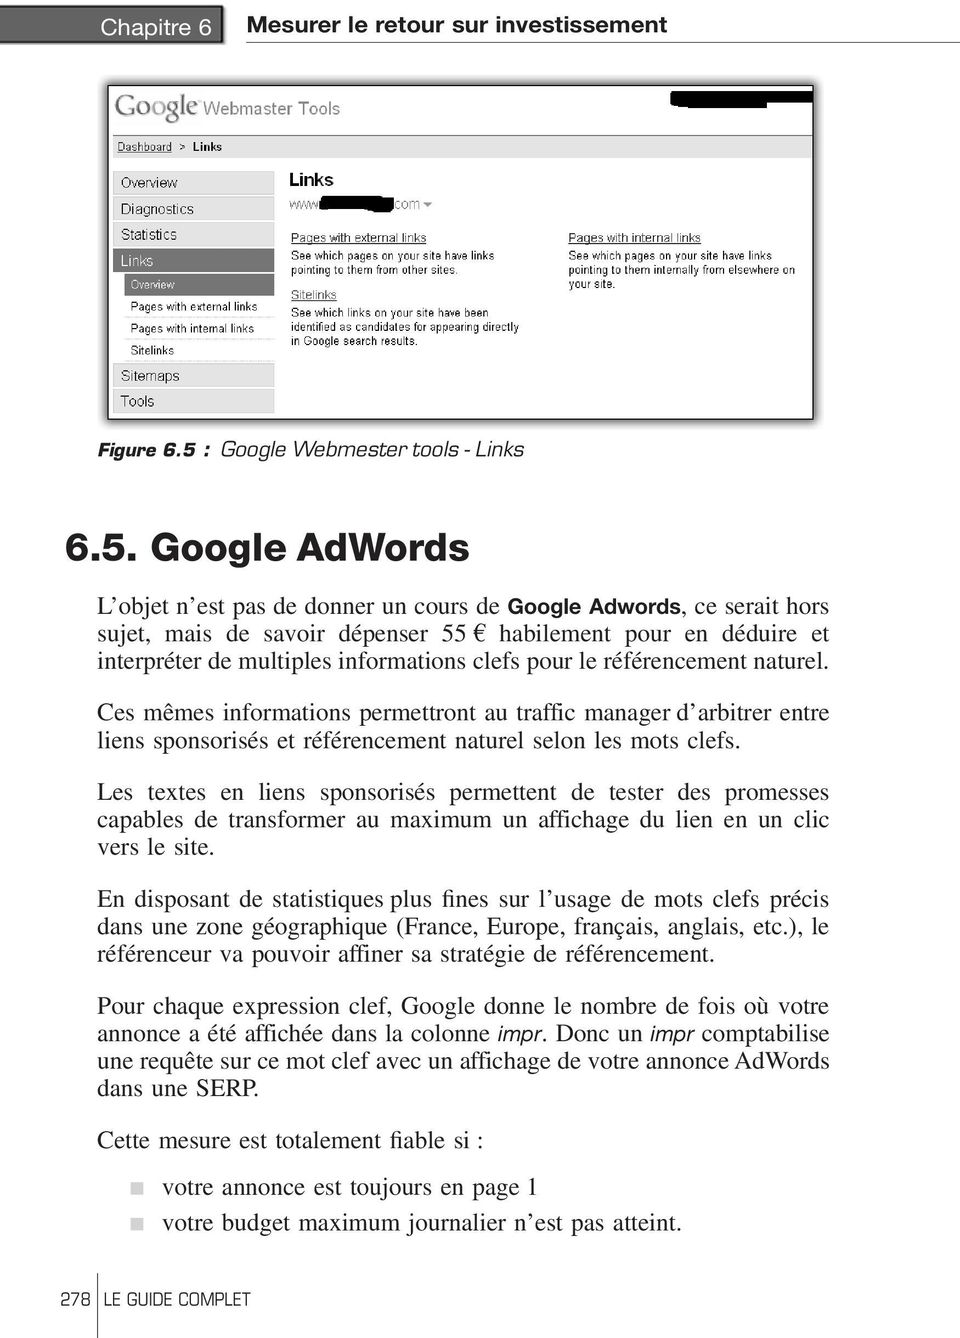 Google AdWords L objet n est pas de donner un cours de Google Adwords, ce serait hors sujet, mais de savoir dépenser 55 Q habilement pour en déduire et interpréter de multiples informations clefs